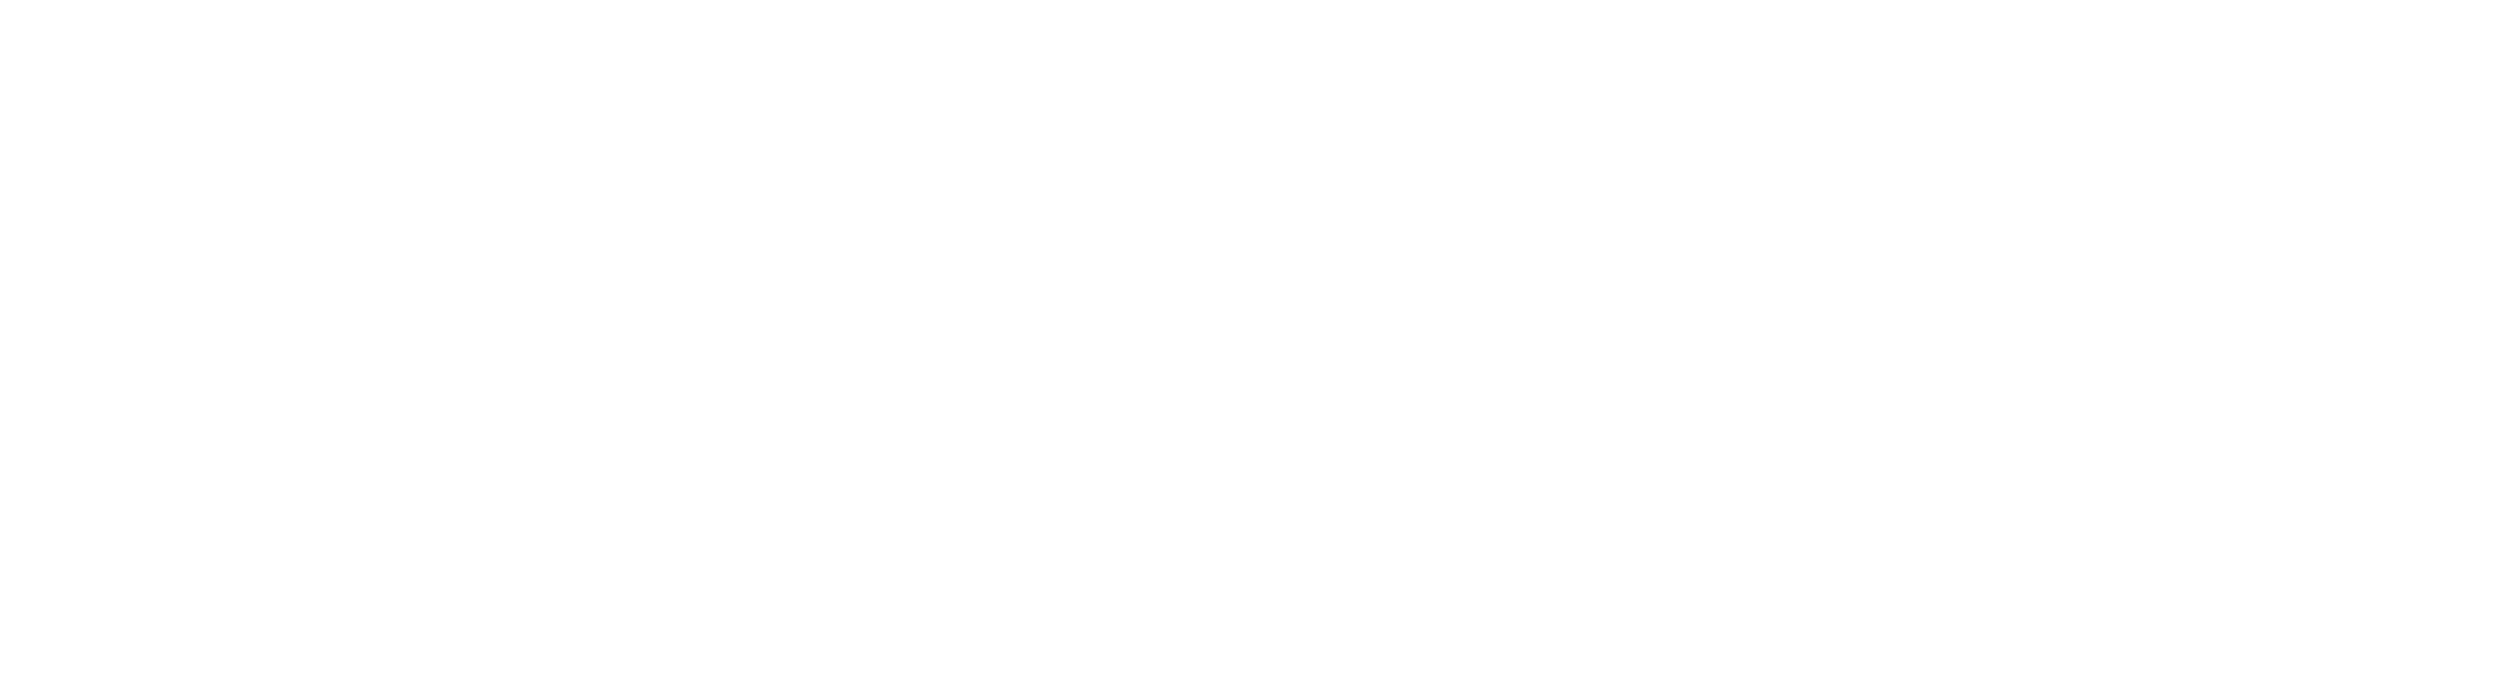 prosysco_logo Kopie